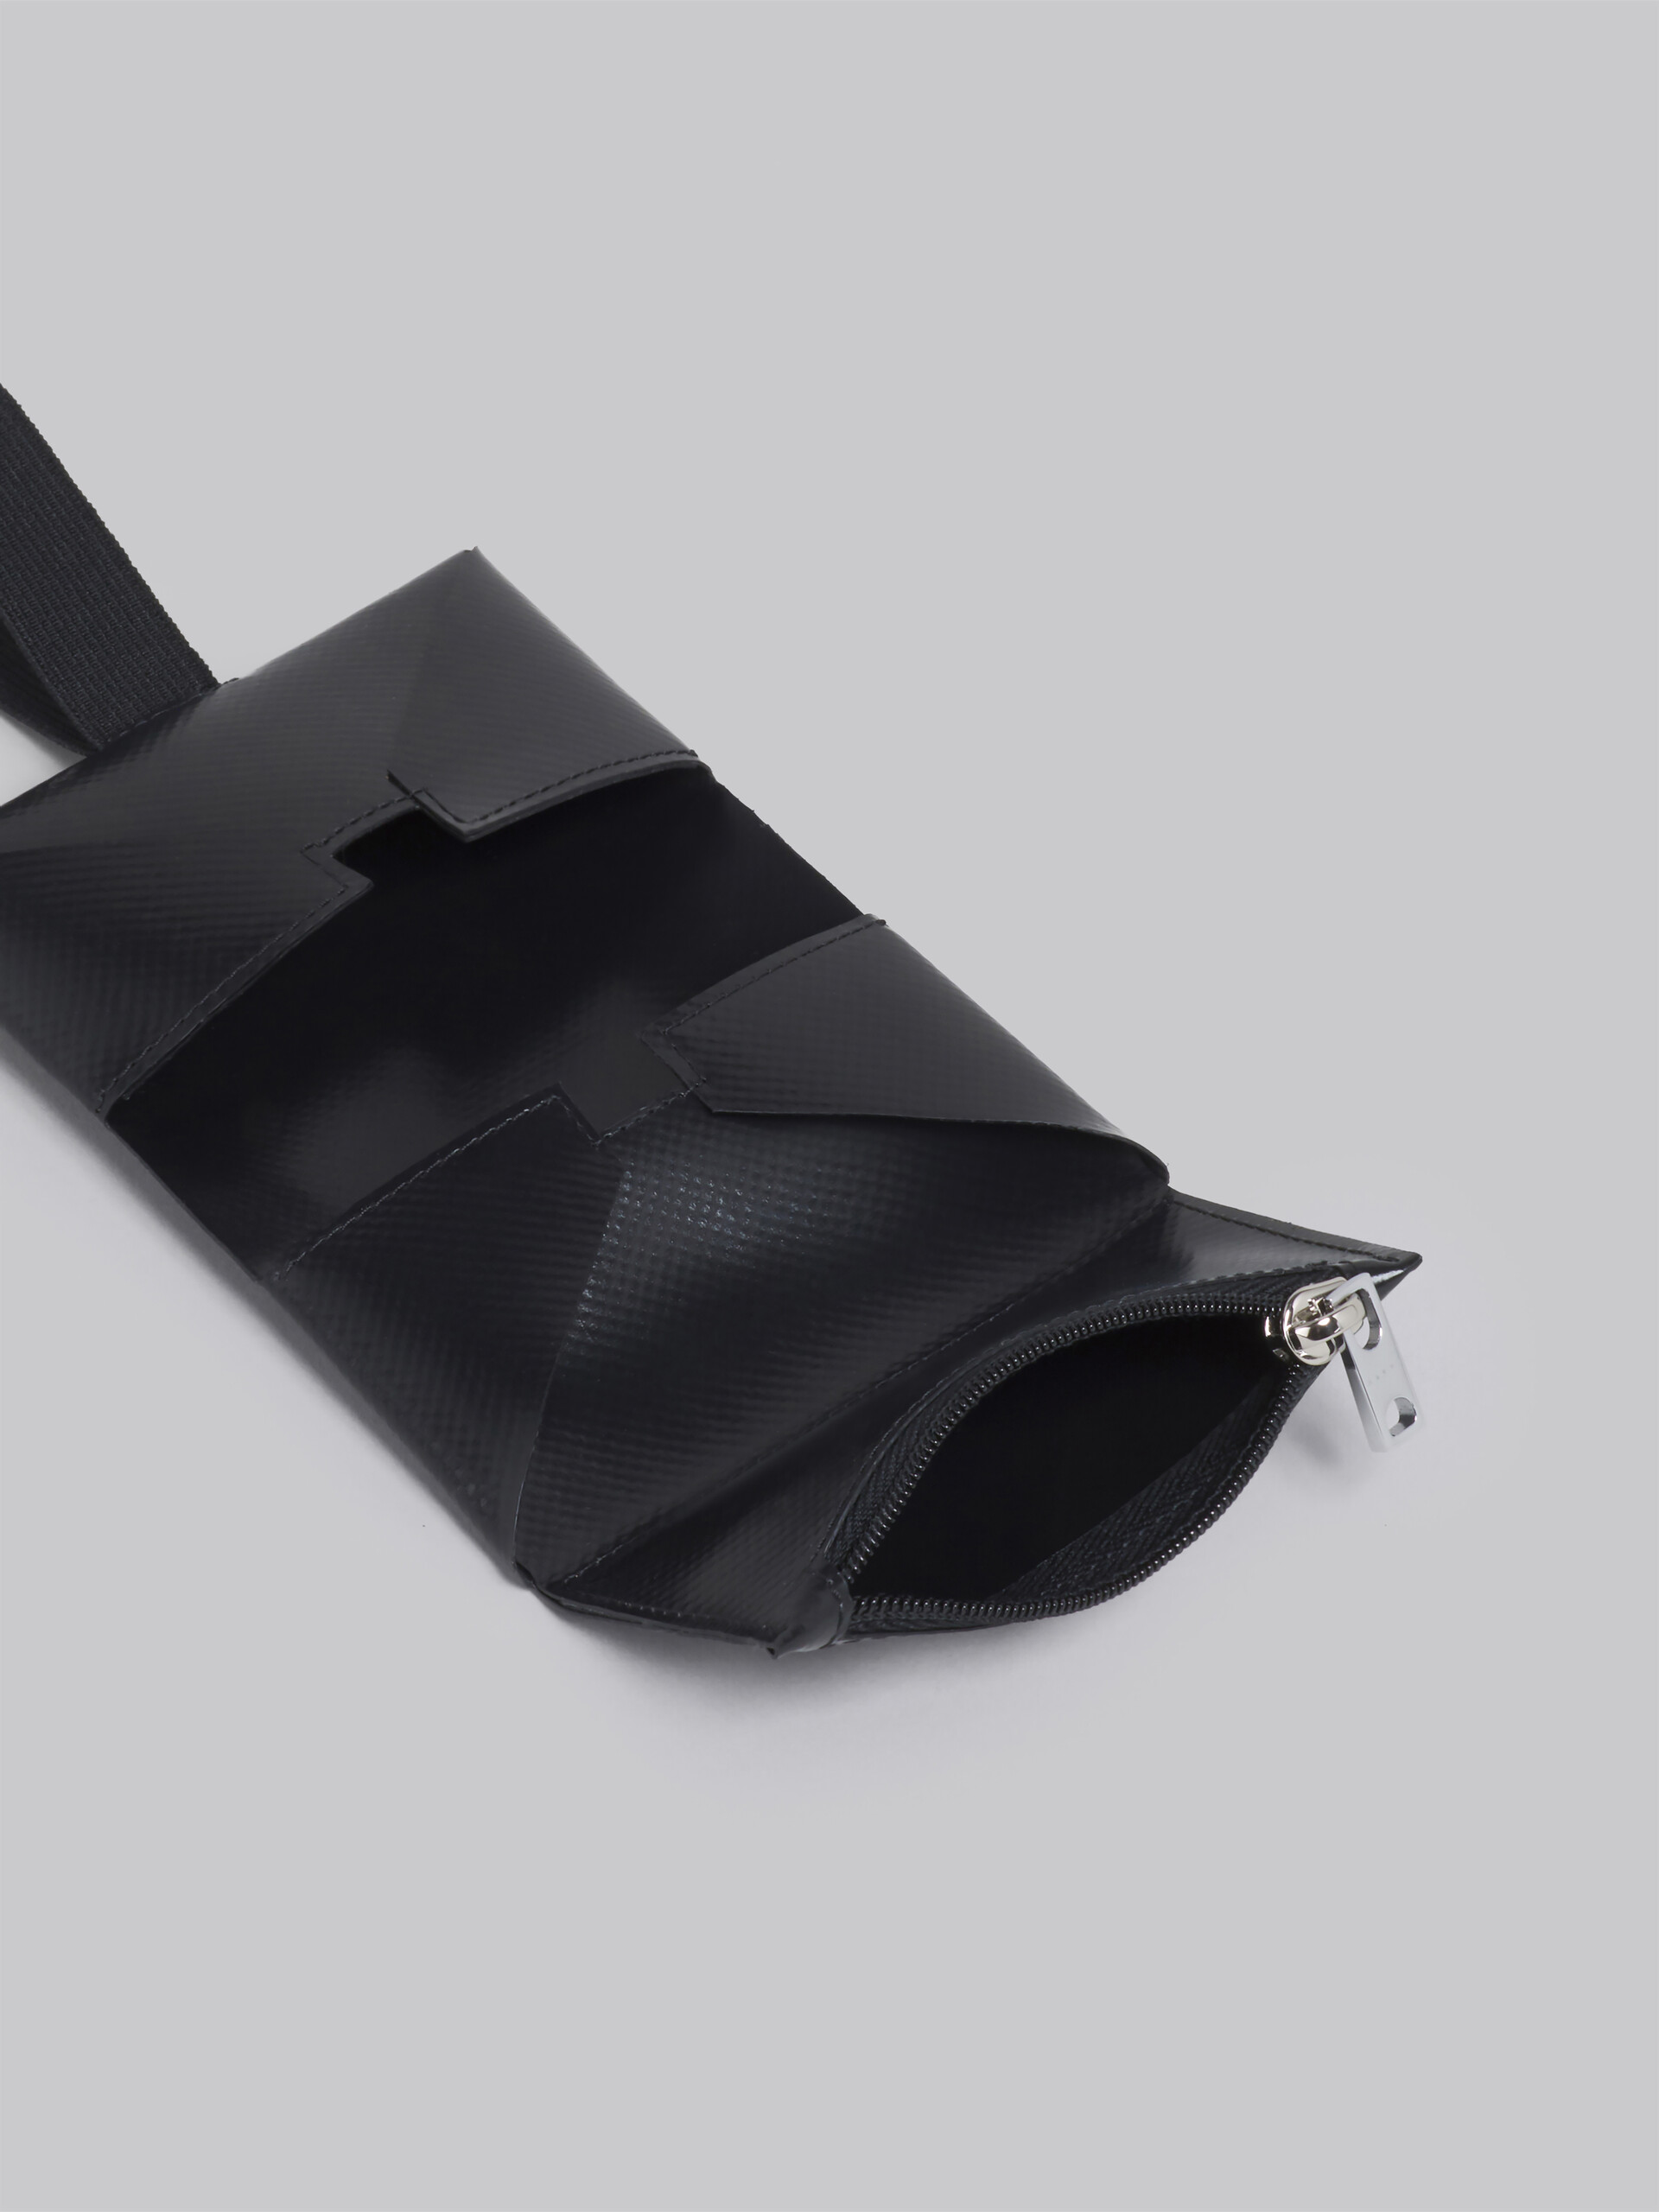 Portafoglio in PVC con costruzione origami nero - Portafogli - Image 2